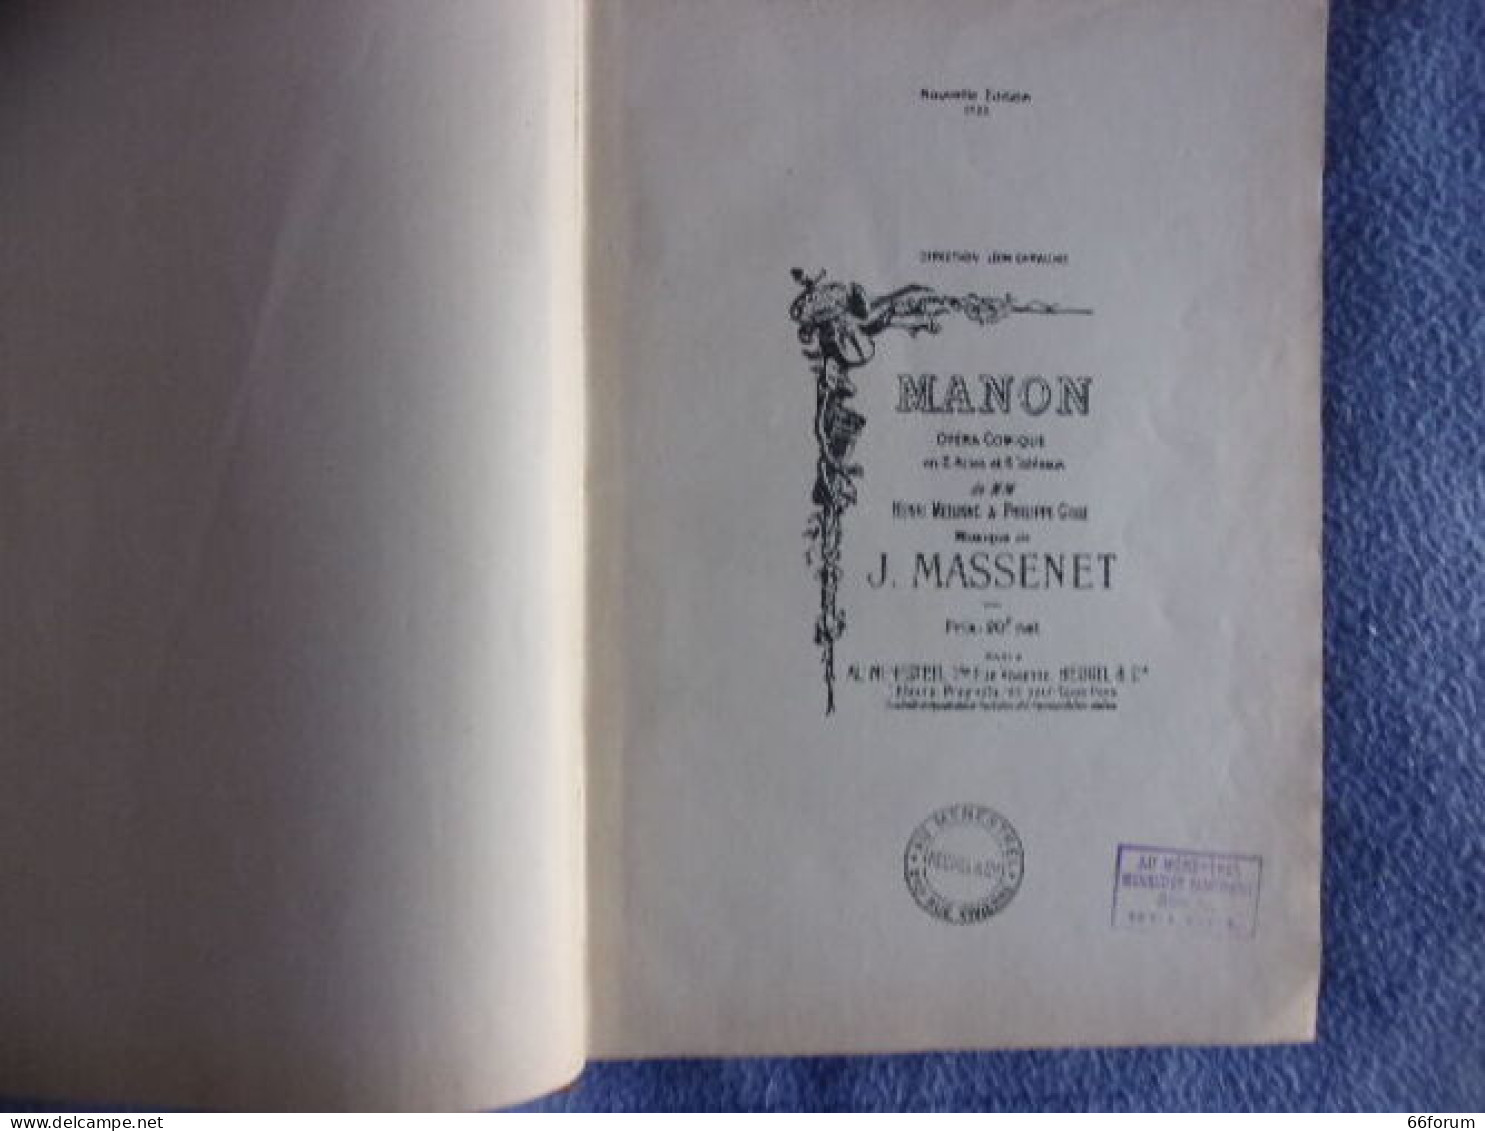 Manon - Musique